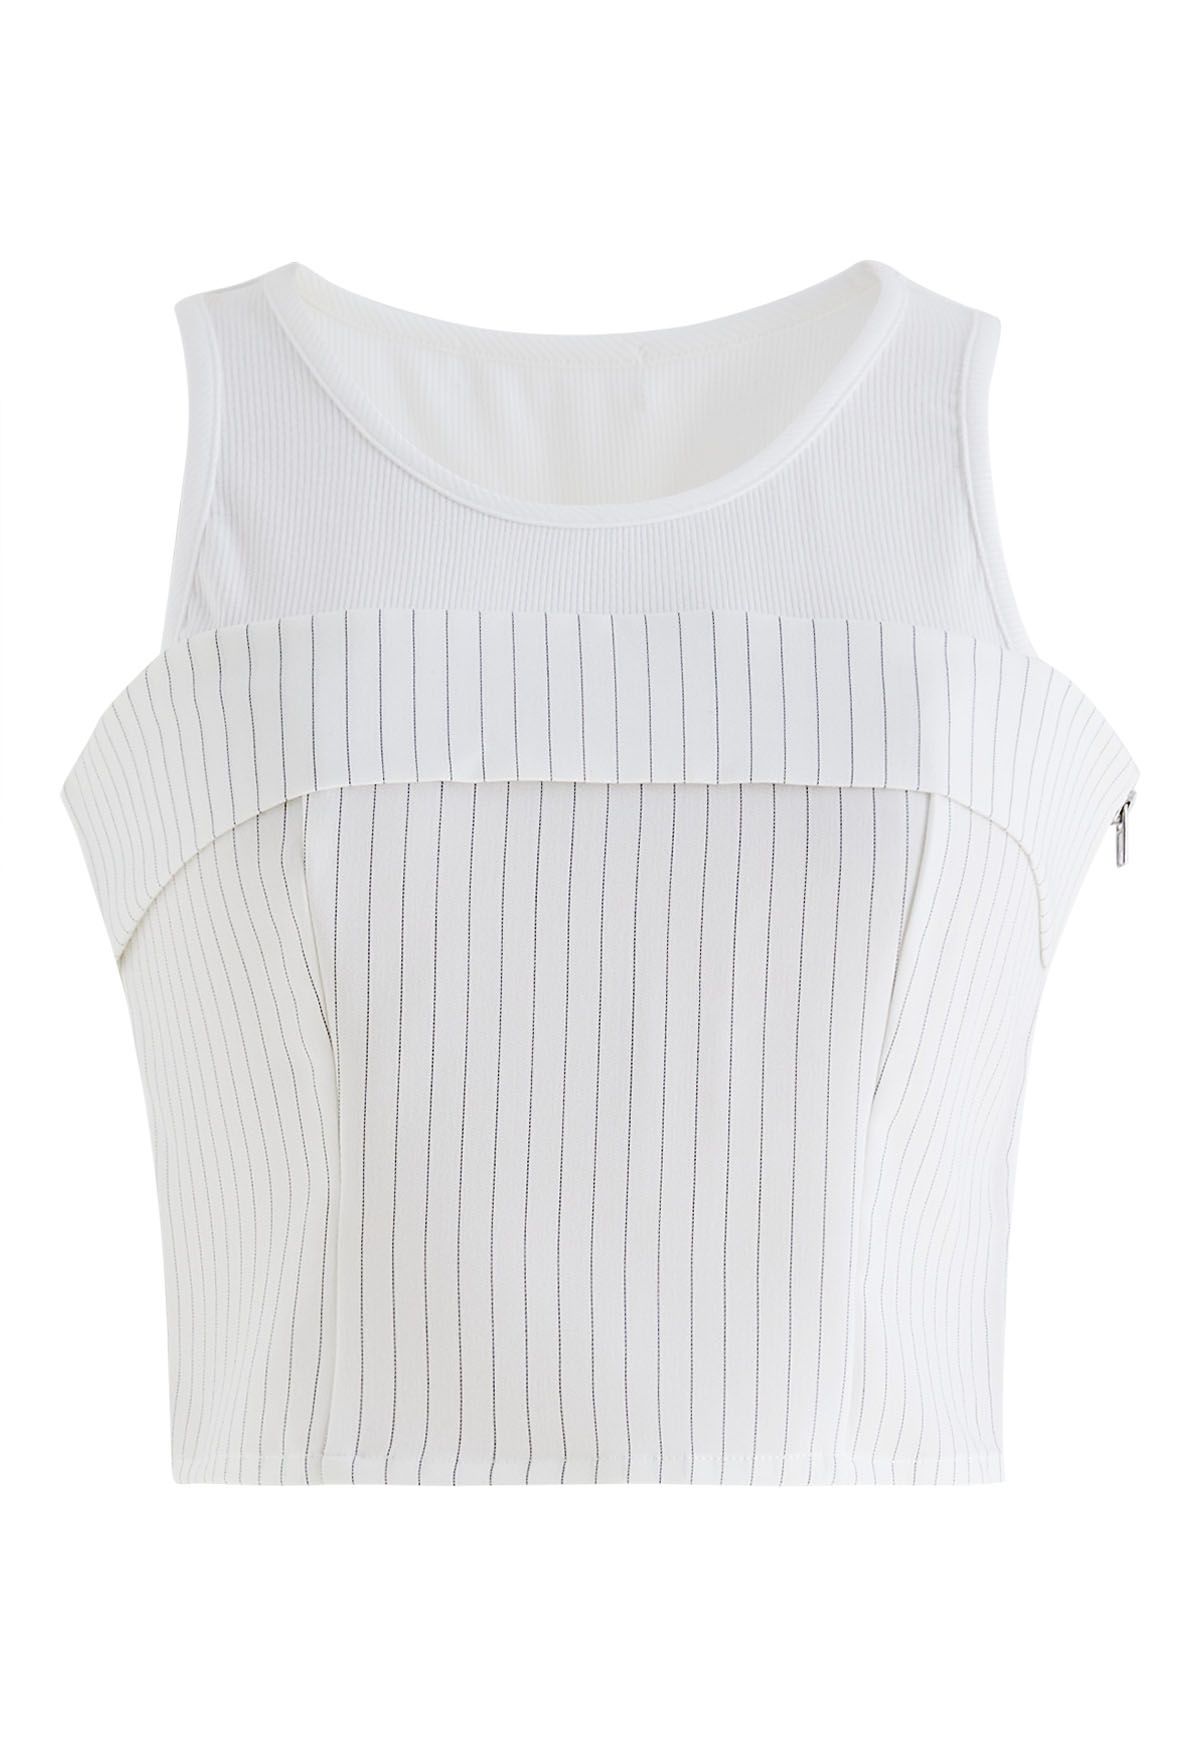 Camiseta sin mangas con raya vertical doblada y empalmada en blanco